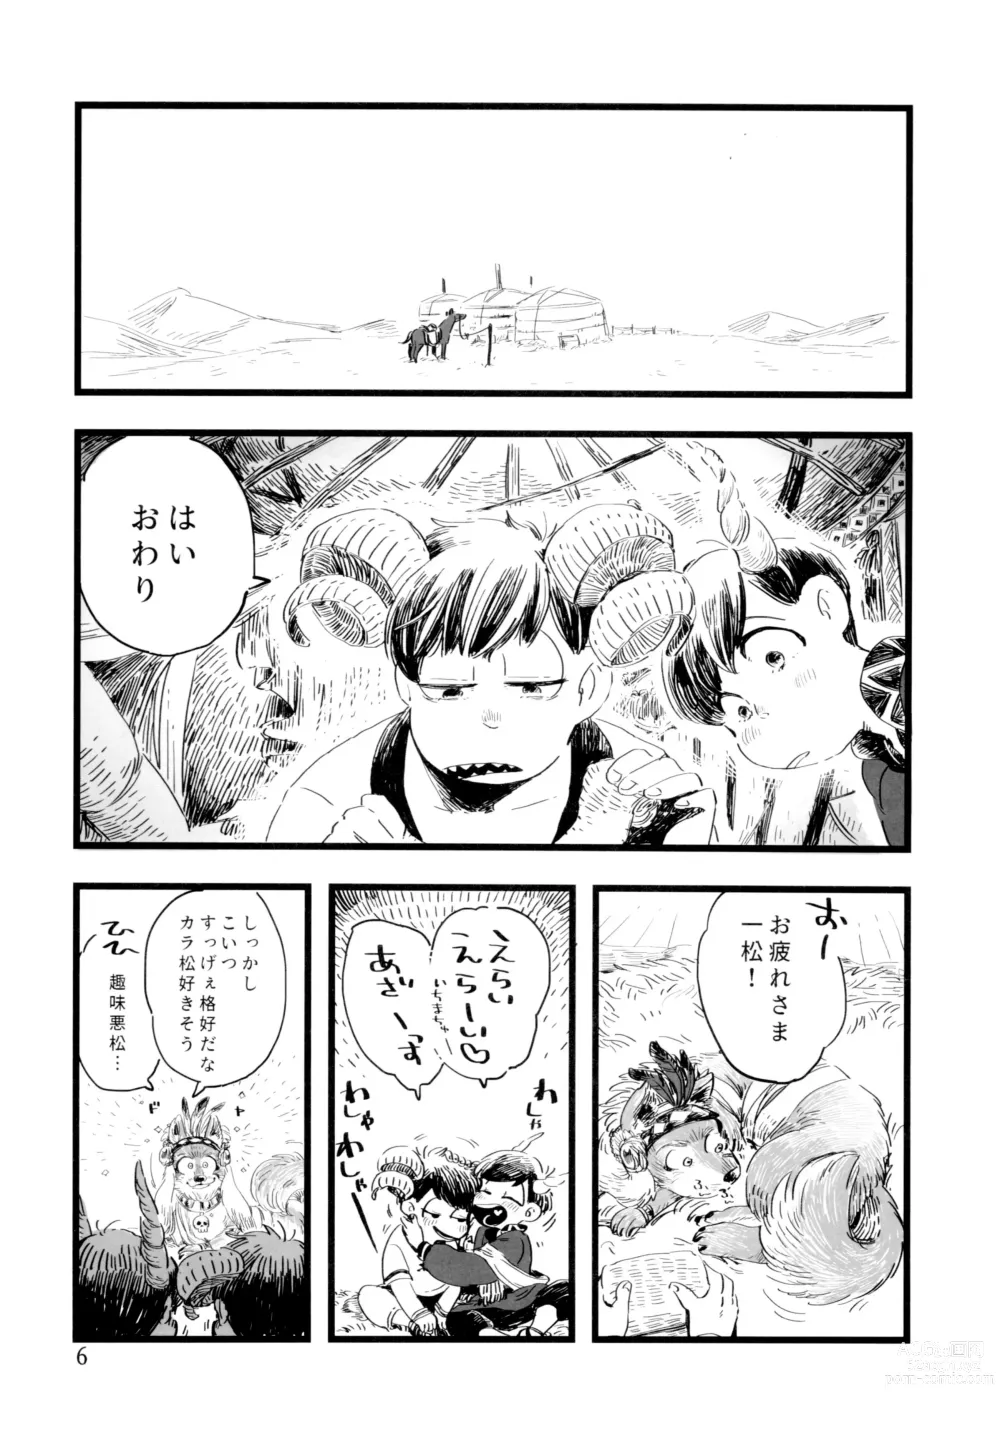 Page 6 of doujinshi Jinro and Tsuno Minzoku